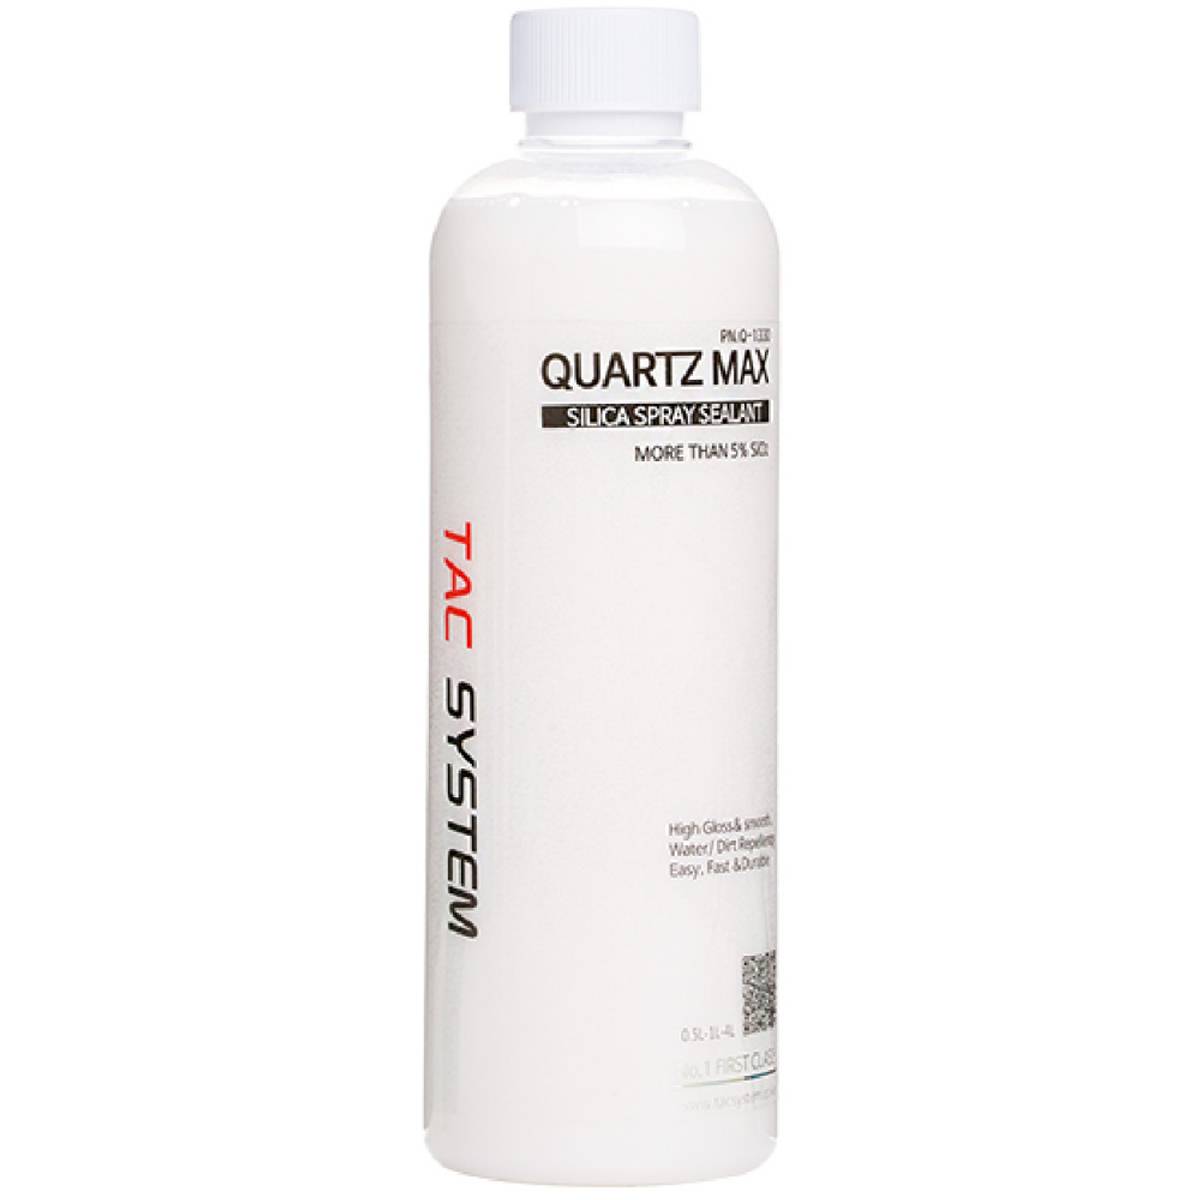 Tacsystem Quartz Max 500ml spray coating - Garasjekos.no